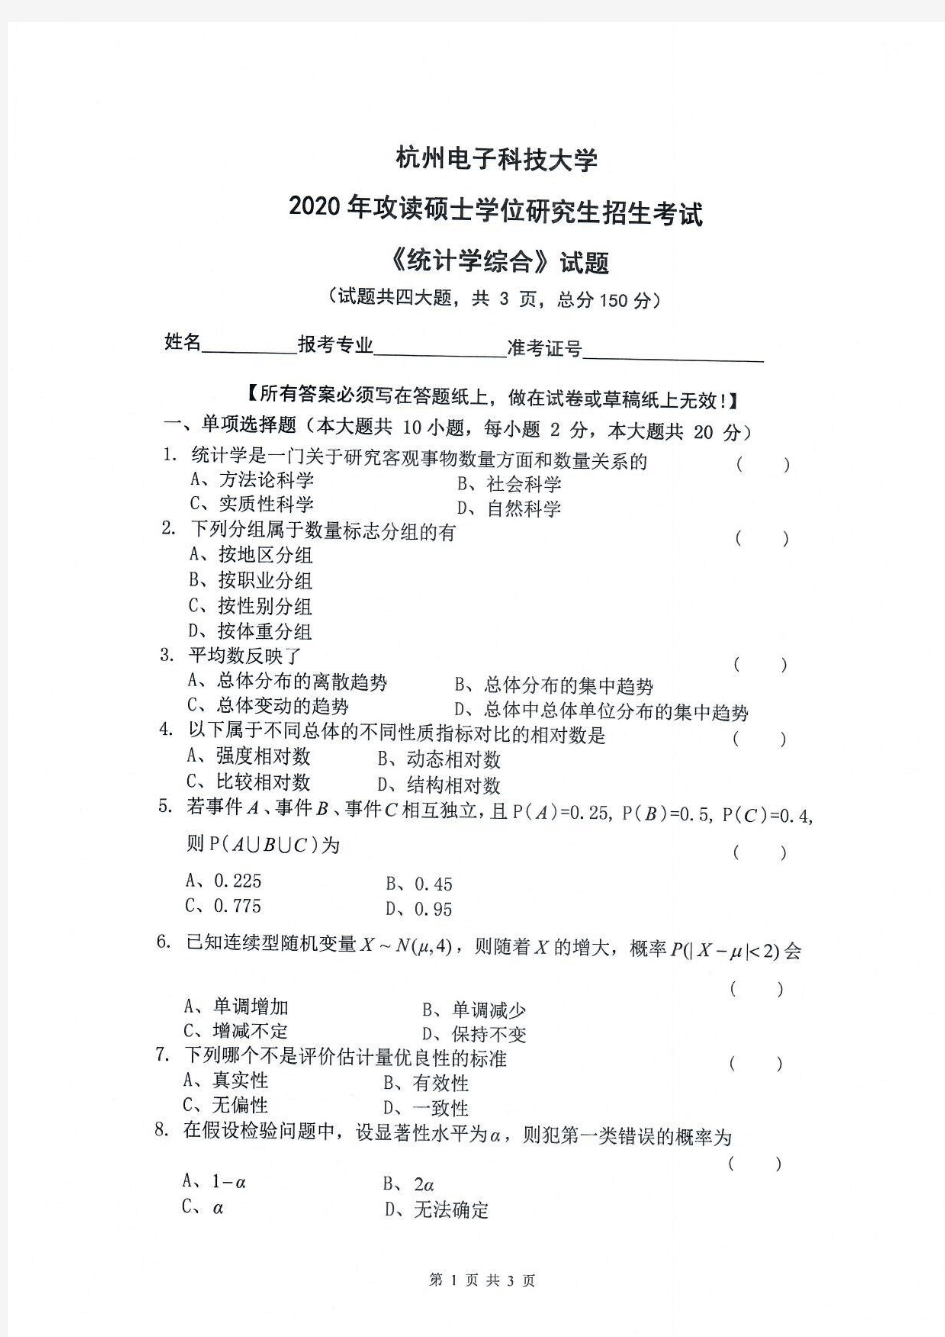 统计学综合-杭州电子科技大学2020年攻读硕士学位研究生招生考试试题